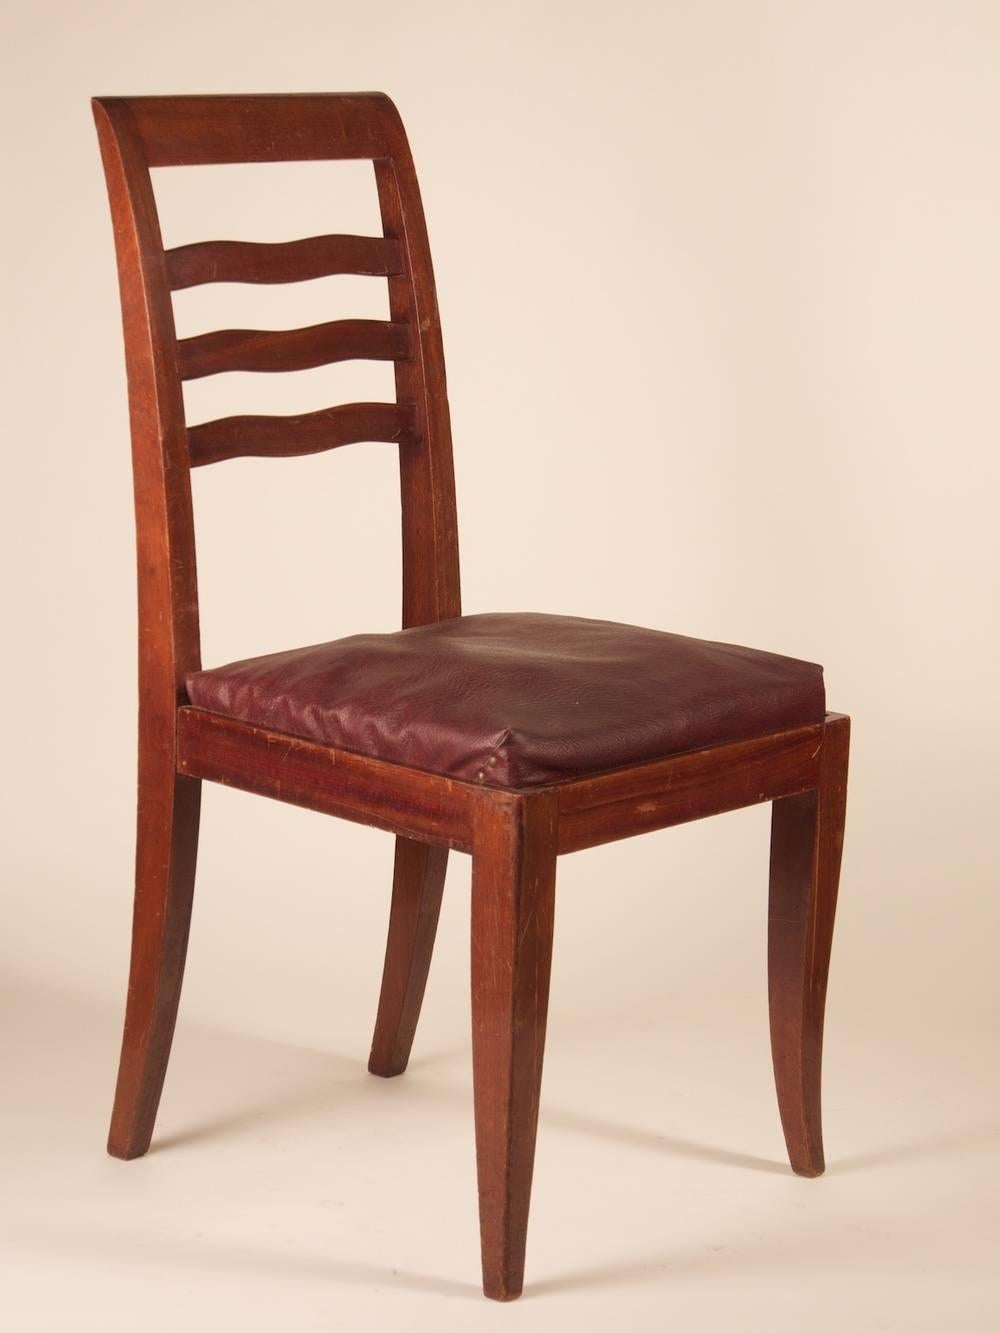 Chaises de salle à manger Art Déco françaises, ensemble de six, en acajou, vers 1938.

Veuillez noter que ces chaises ne sont pas restaurées sur les photos.

**Le prix comprend la restauration, la remise en état et le rembourrage avec le tissu